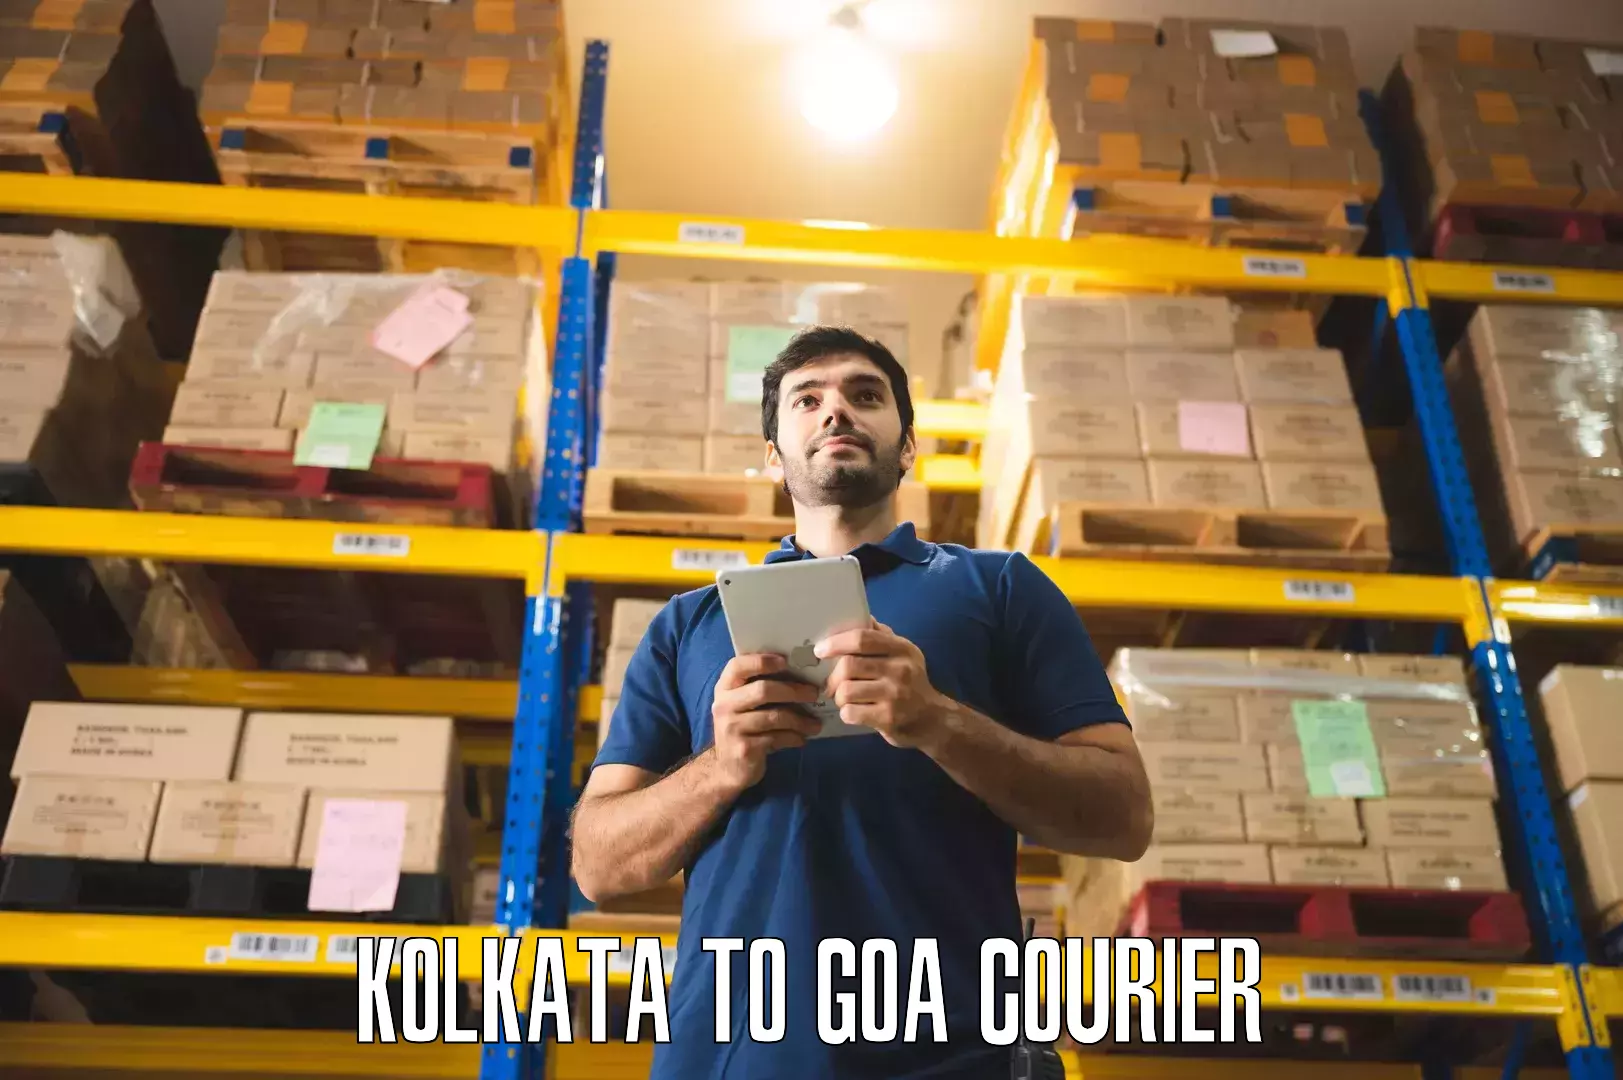 Home relocation experts Kolkata to Goa